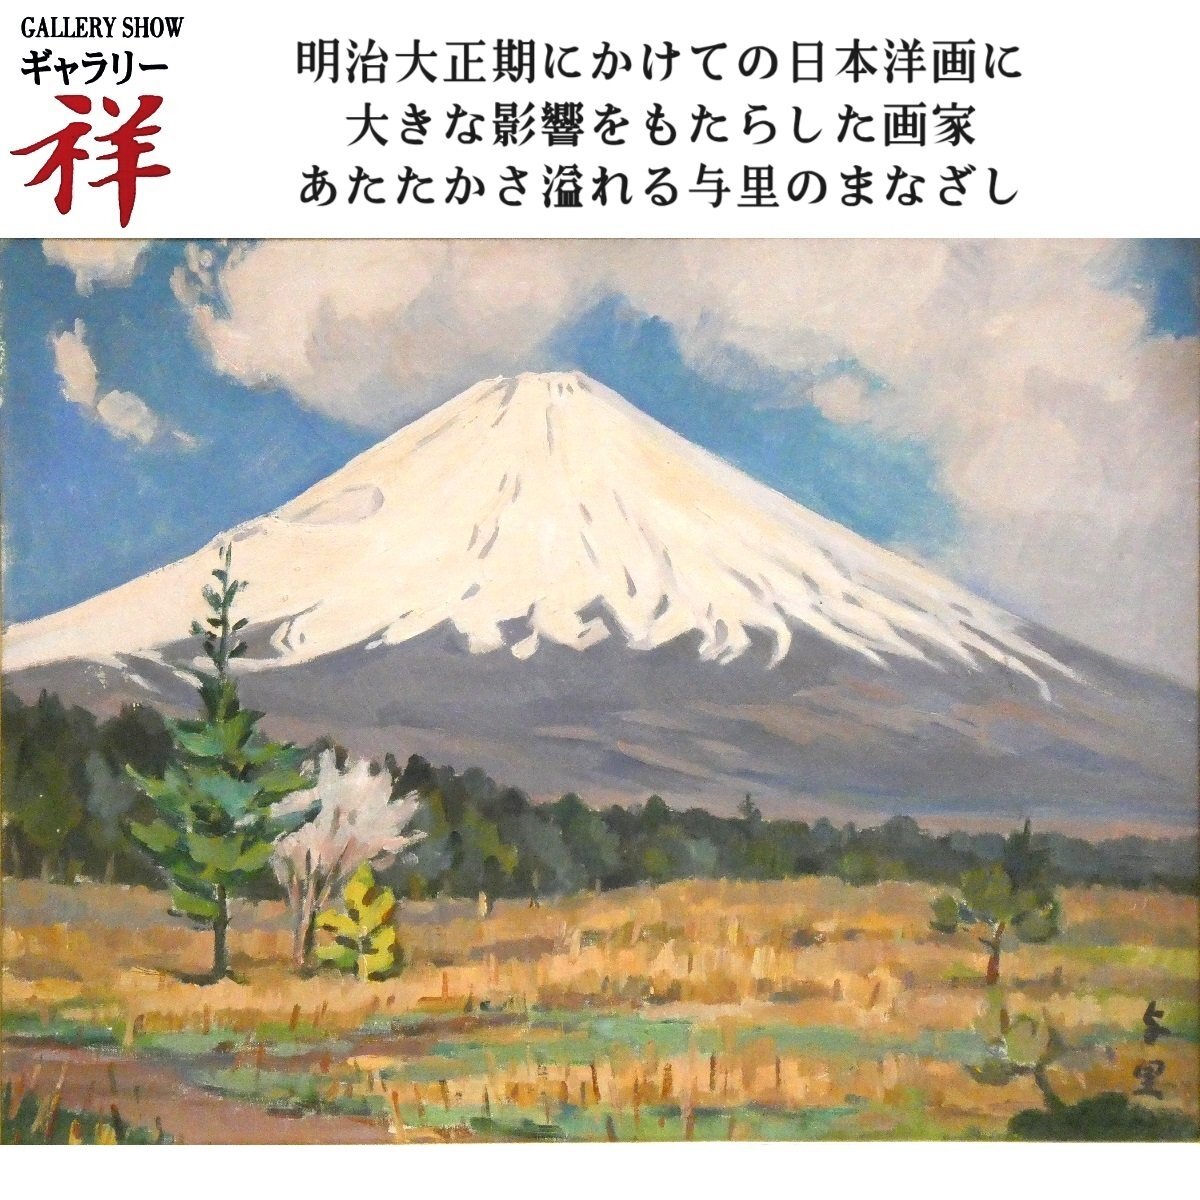 Sho [Authentisches Werk] Yori Saito Fuji Ölgemälde Nr. 10, signiert, in Saitama geborener Meister der modernen japanischen westlichen Malerei, Fuusan-kai Mt. Fuji, handschriftlich, einzigartig [Galerie Sho], Malerei, Ölgemälde, Natur, Landschaftsmalerei